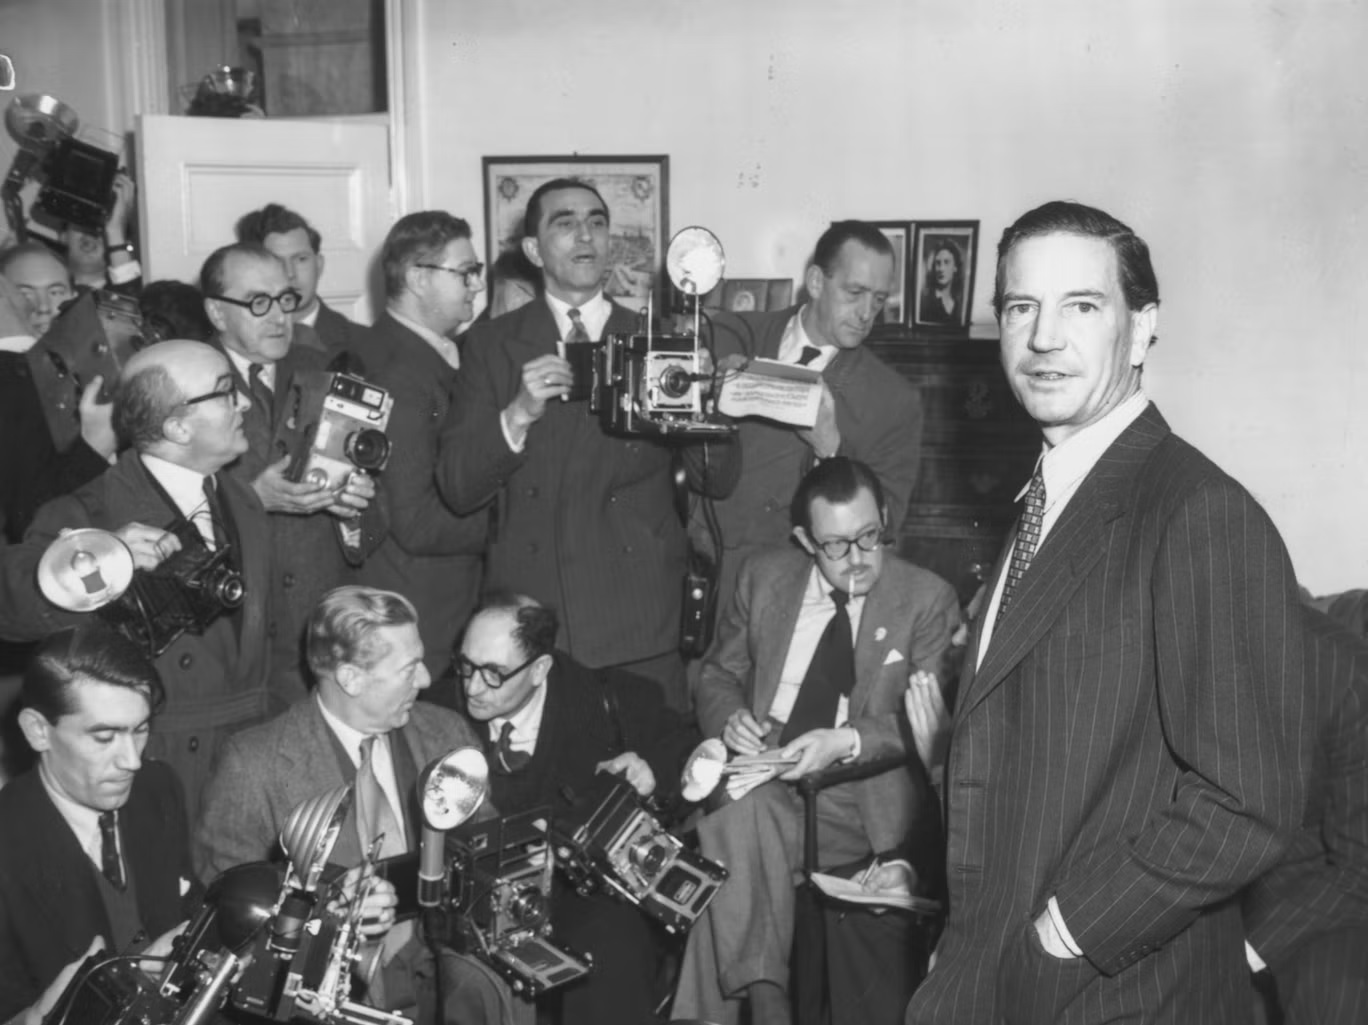 فيلبي (يمين) في مؤتمر صحافي عقد في لندن رداً على مشاركته مع بيرجيس وماكلين، 8 نوفمبر (تشرين الثاني) 1955 (غيتي)